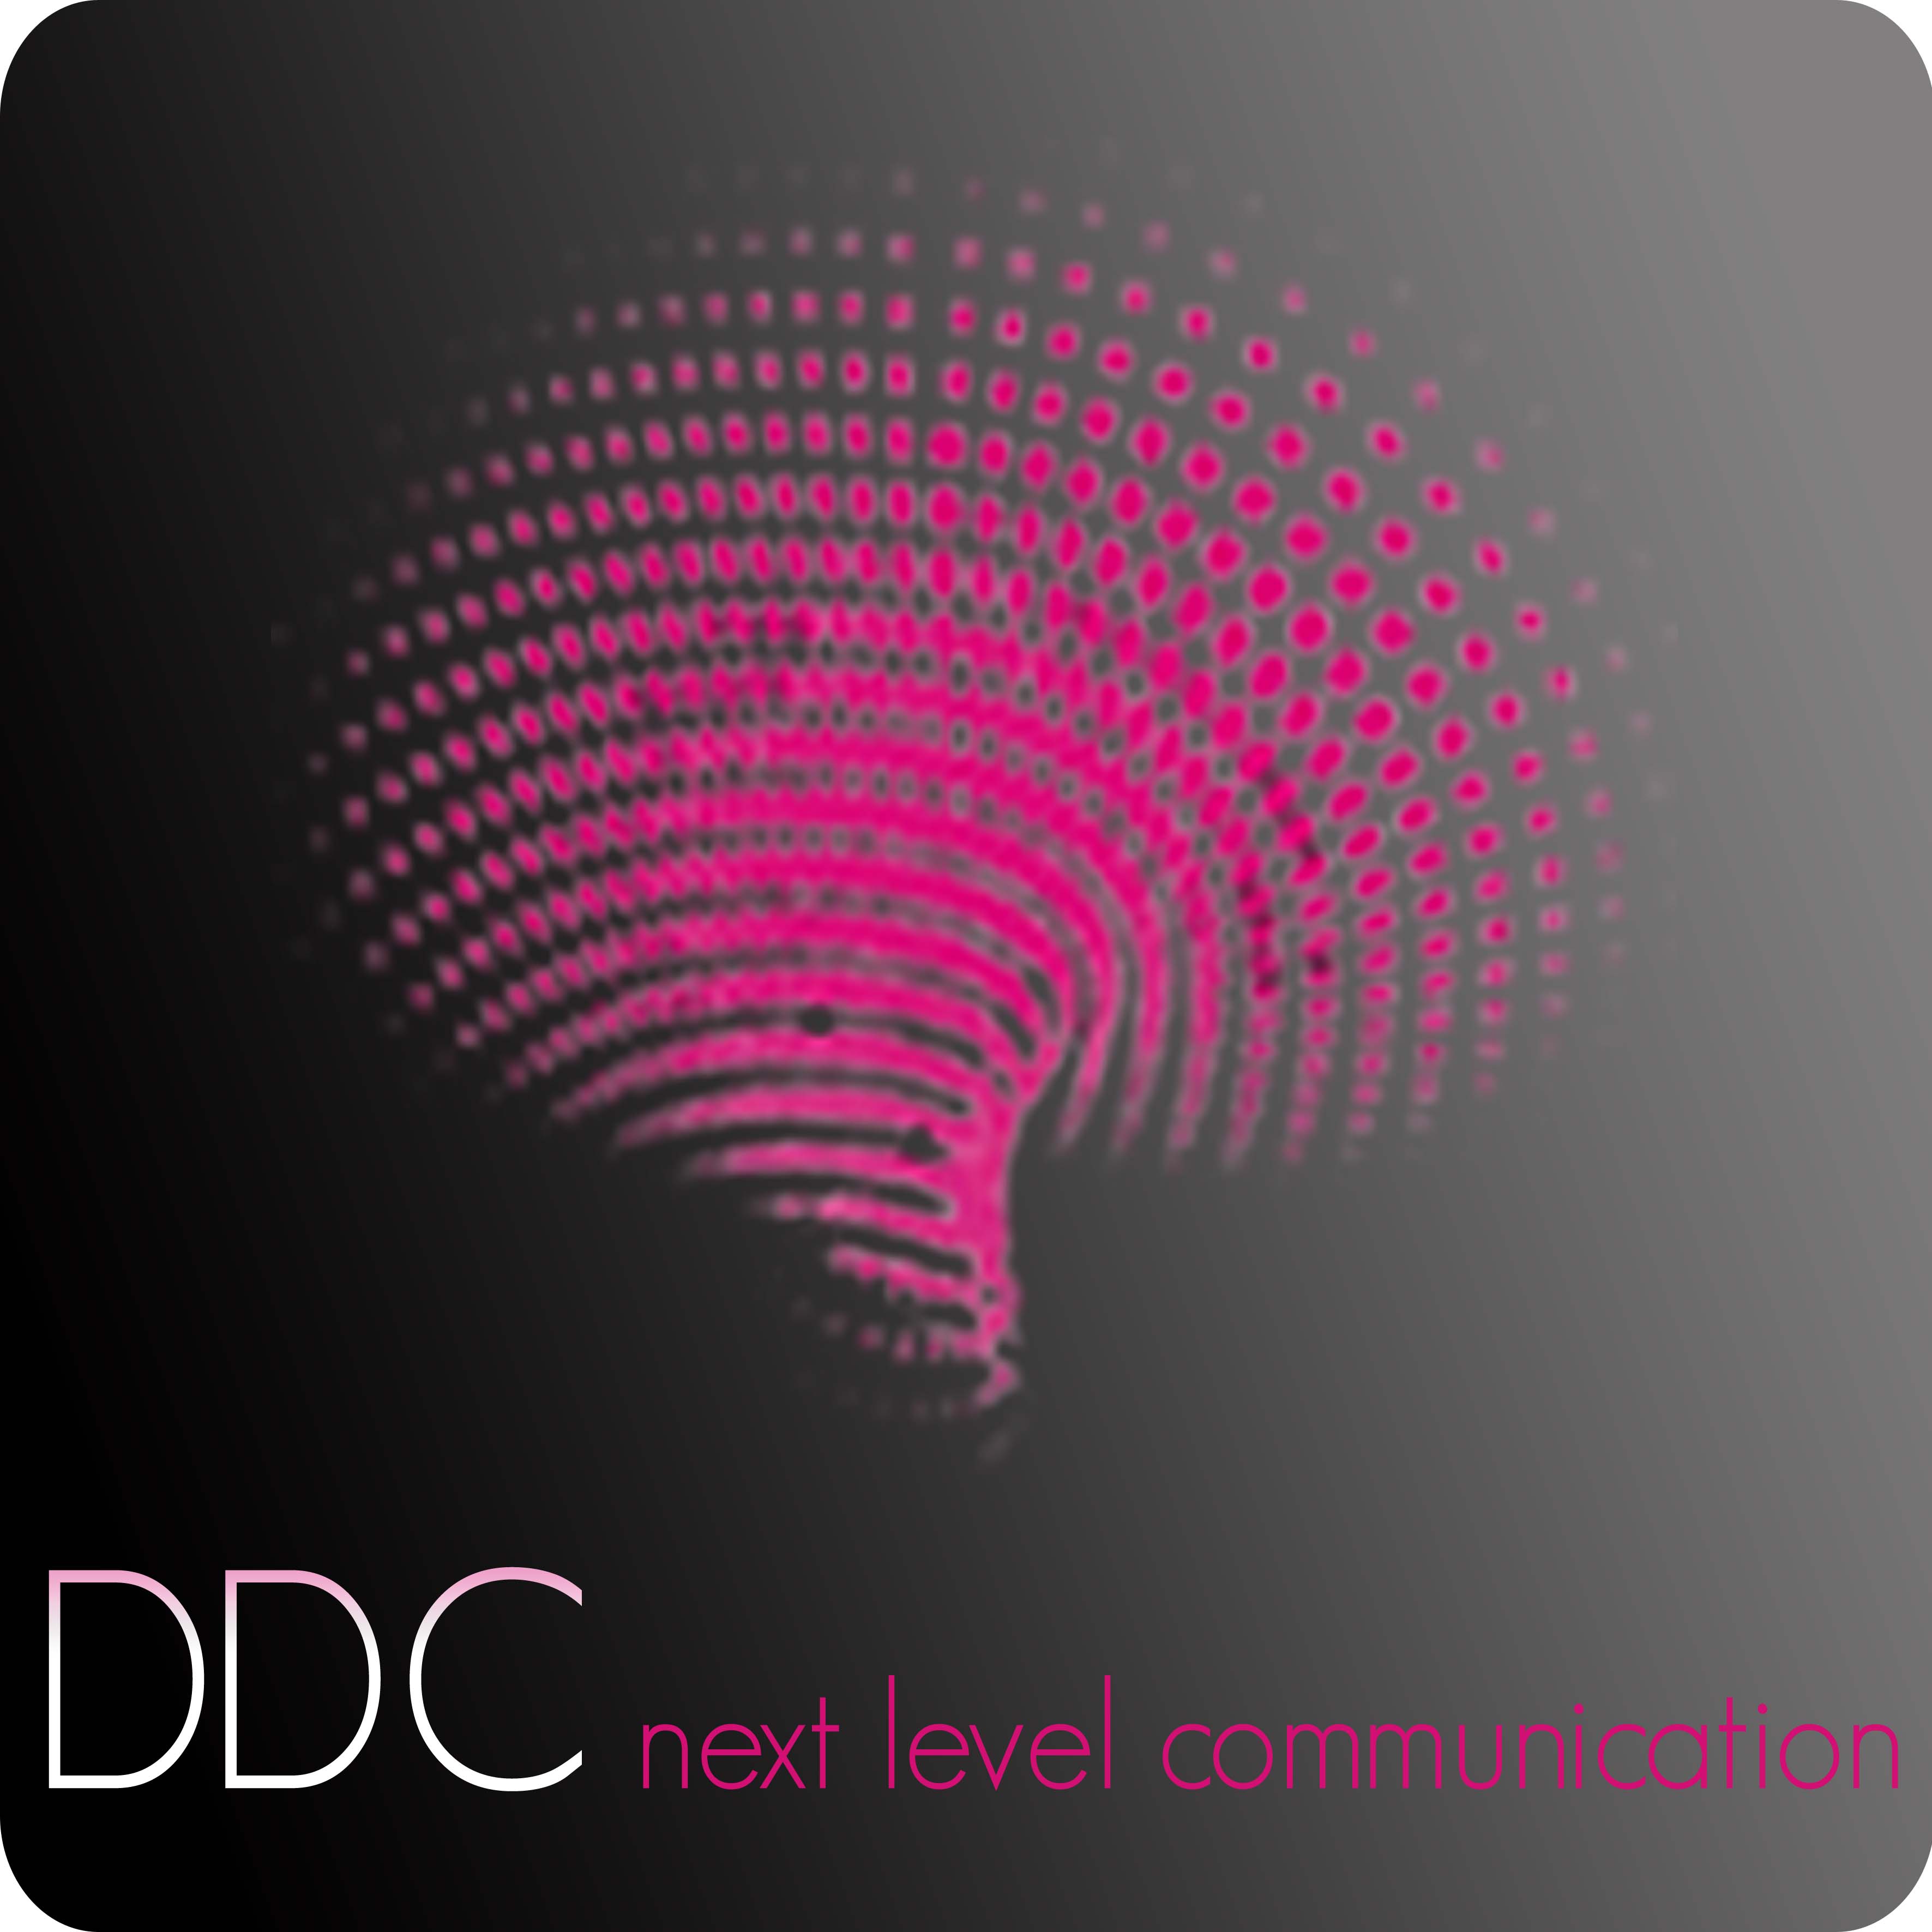 DDC Events & Communication